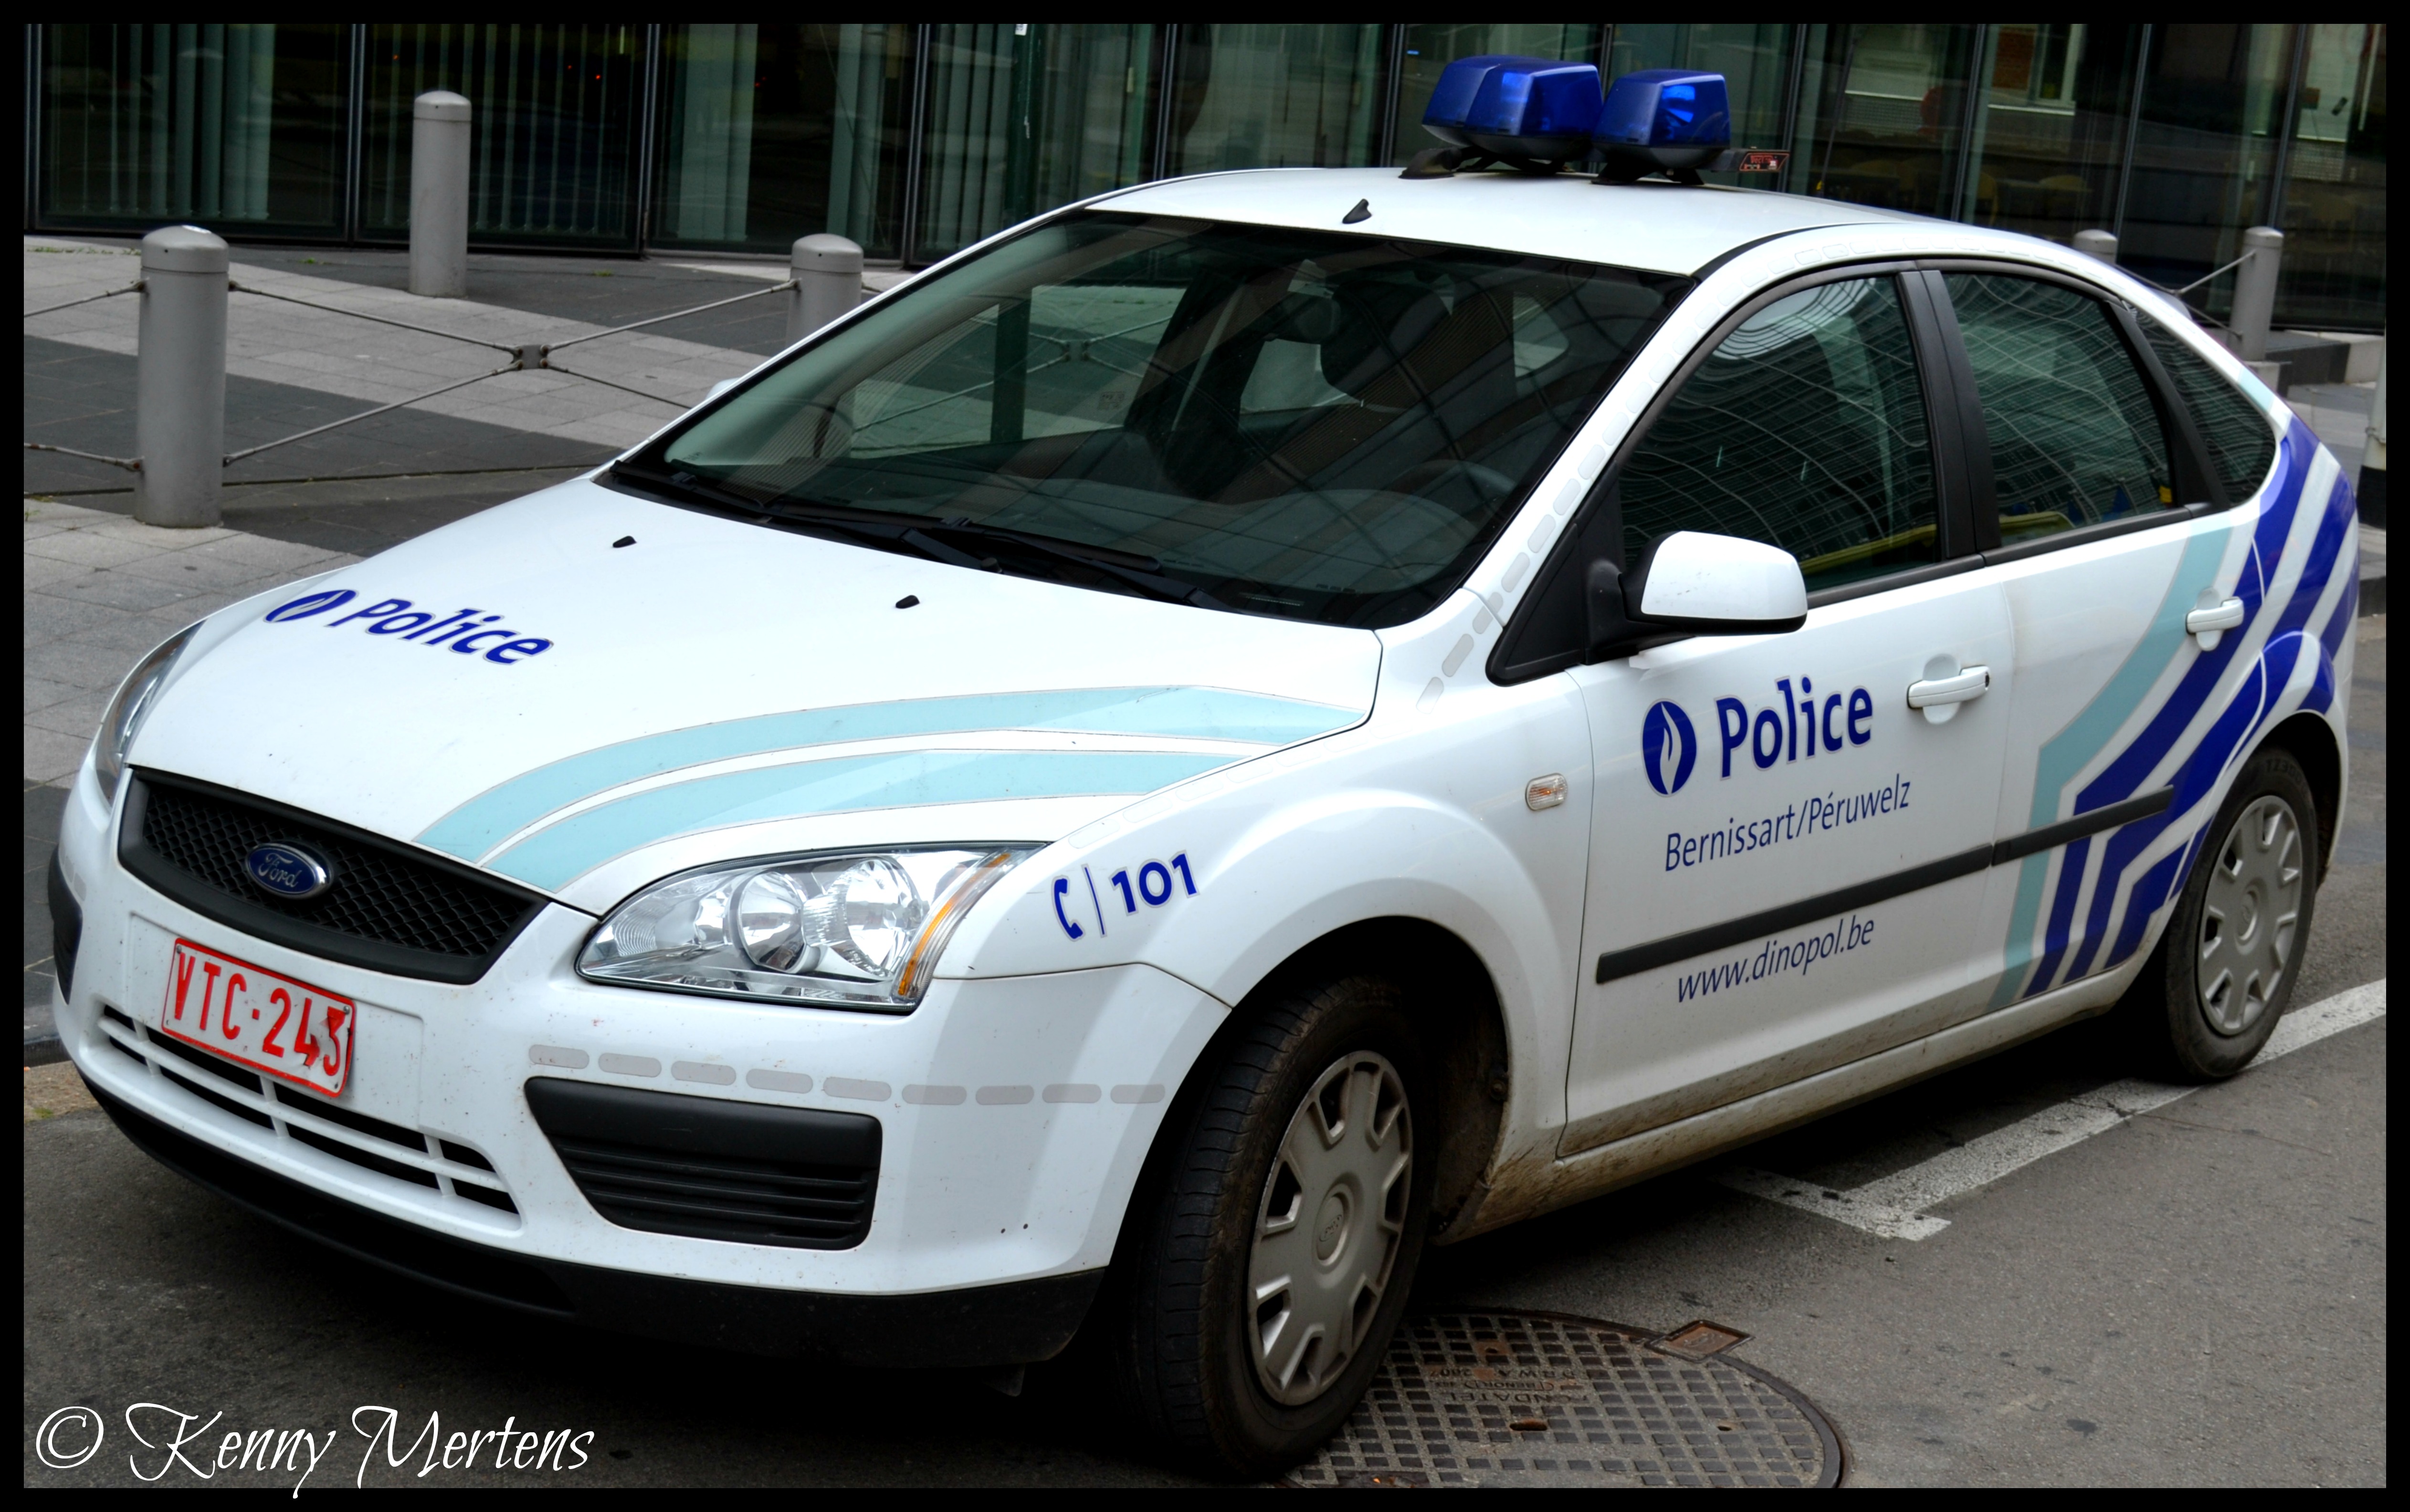 Zone de police 5321 "Dinopol" (Bernissart/Péruwelz) 14829685252_f1203573b7_o